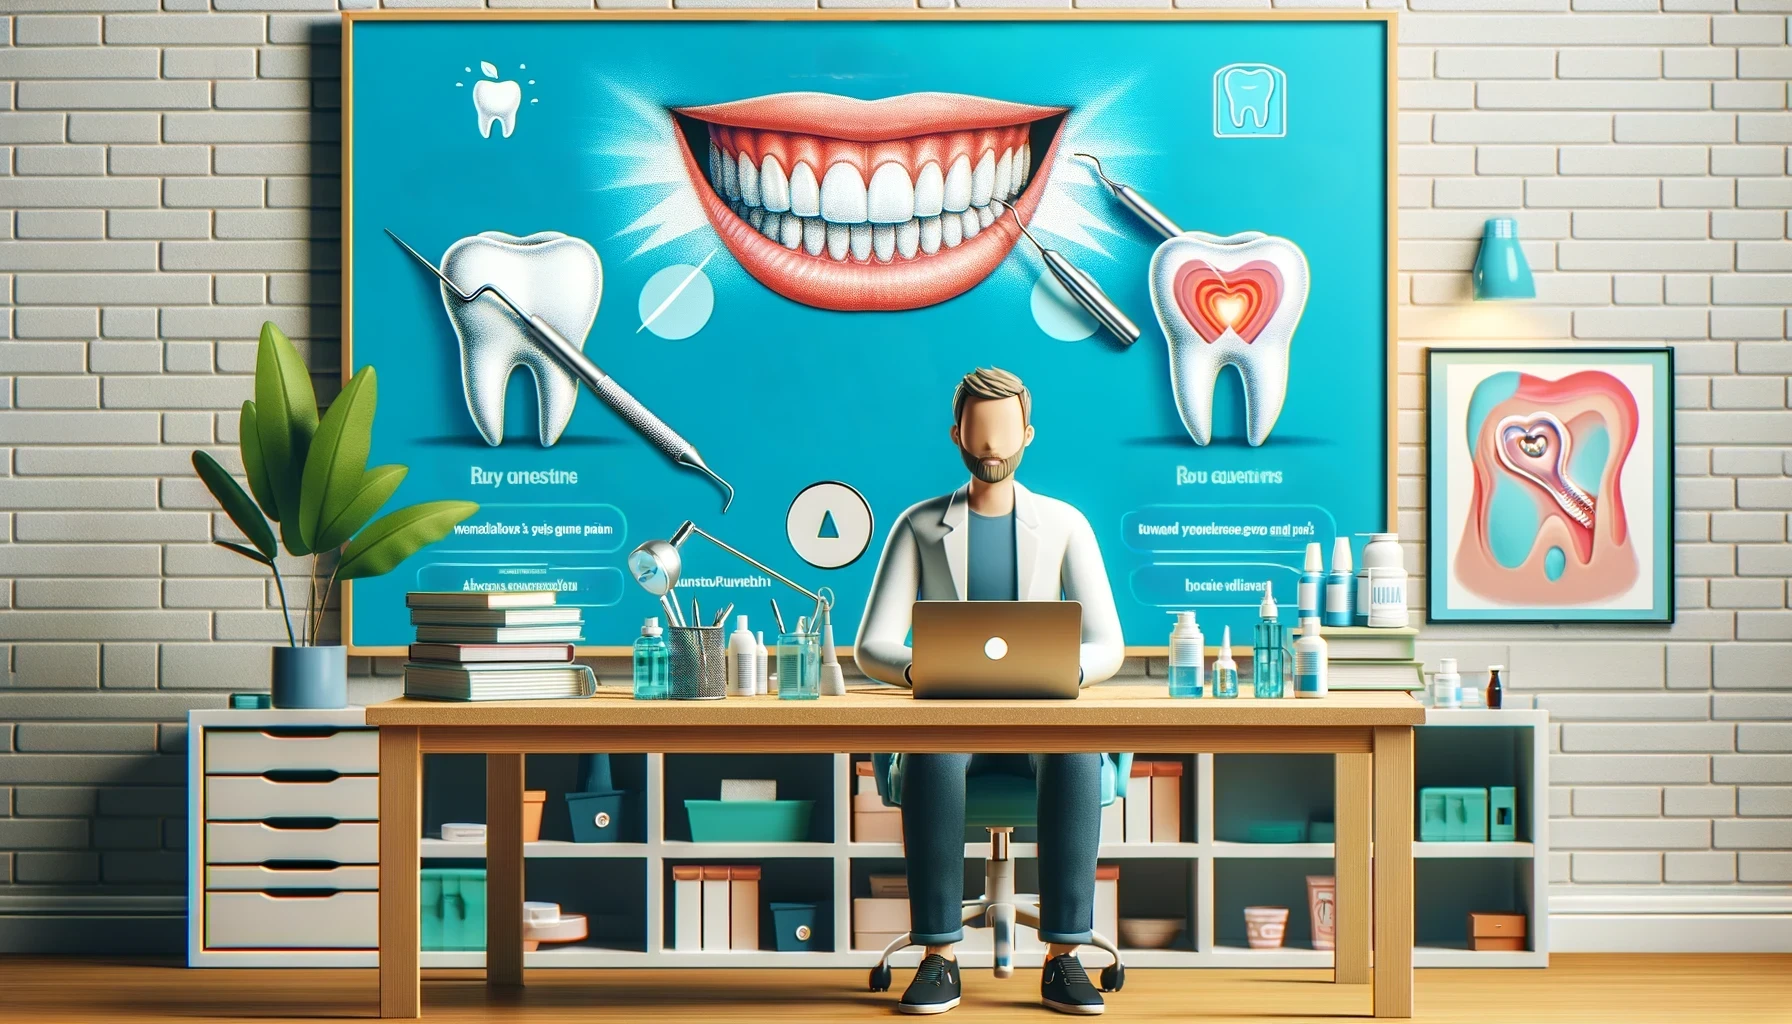 Mann ved skrivebord med tannpleieartikler og laptop. Stor skjerm med tannillustrasjoner og spørsmål-svar-seksjon om tannhelse i bakgrunnen.